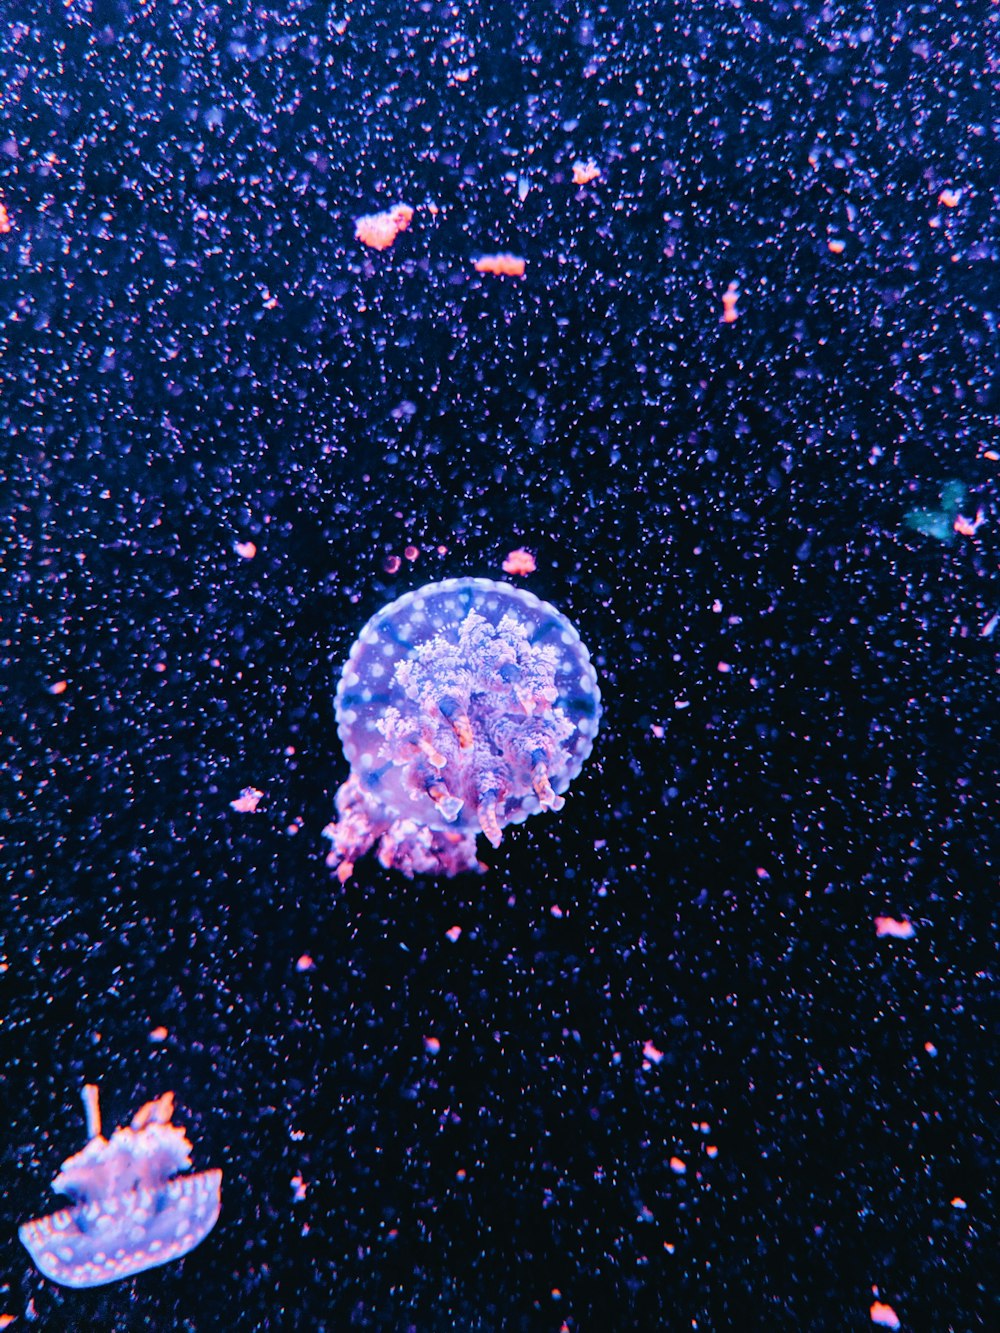 a jellyfish floating in a dark blue ocean